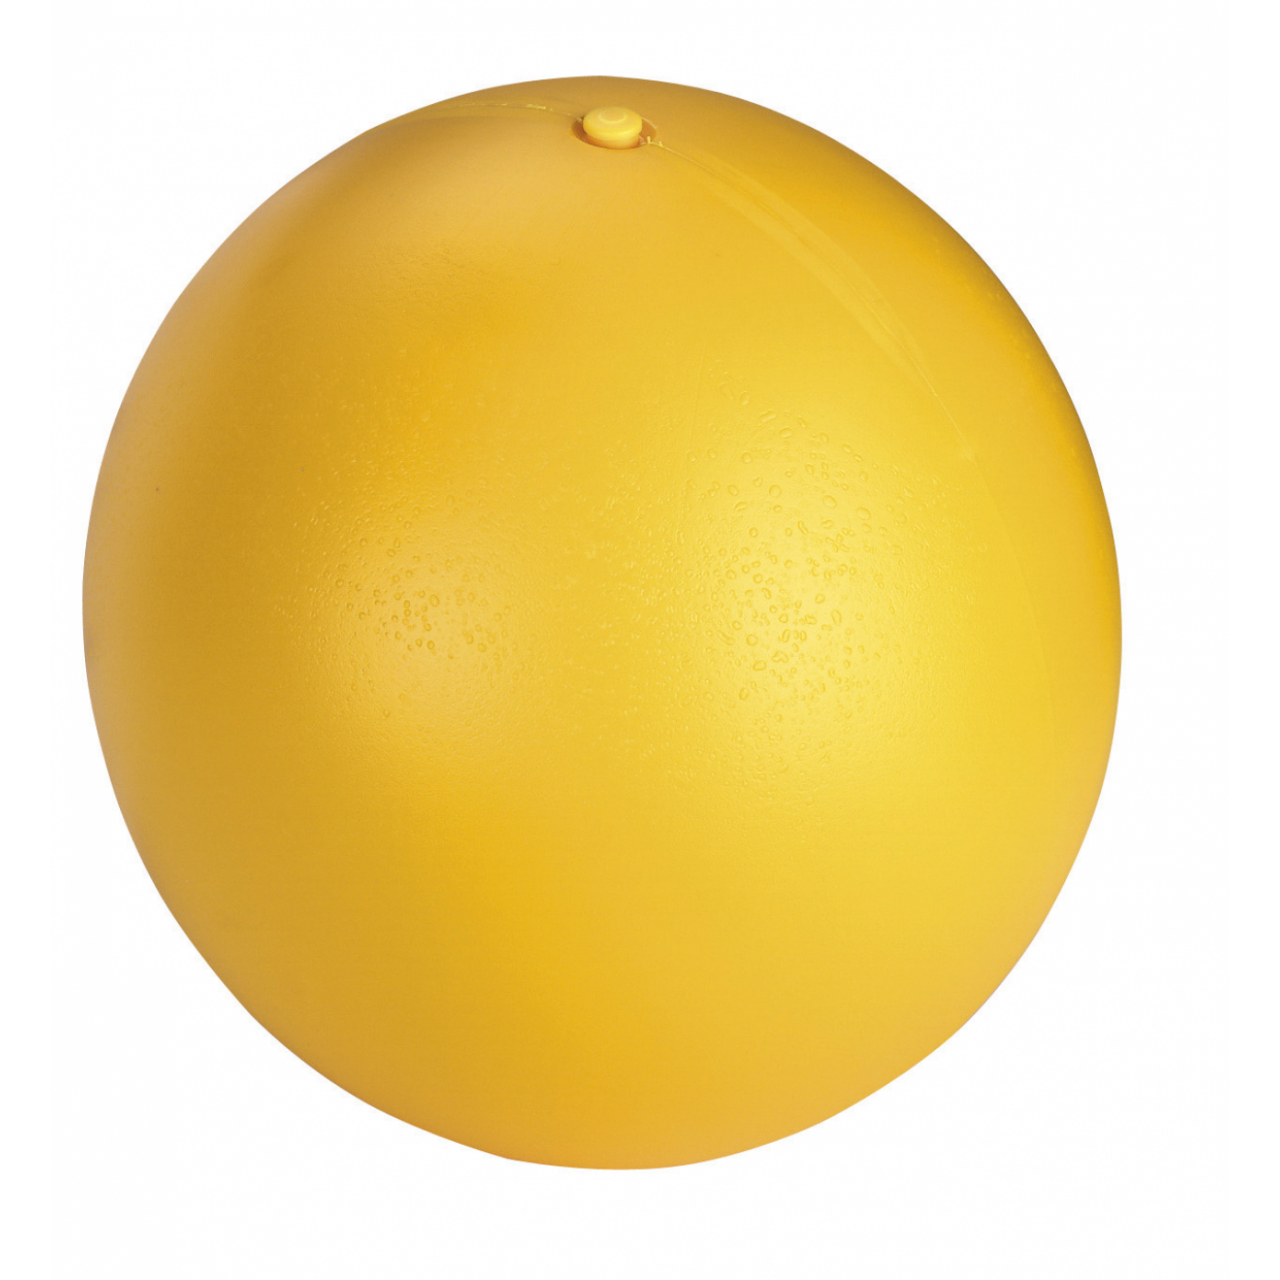 Dugó malacoknak fejlesztett Anti-Stress labdához - sárga